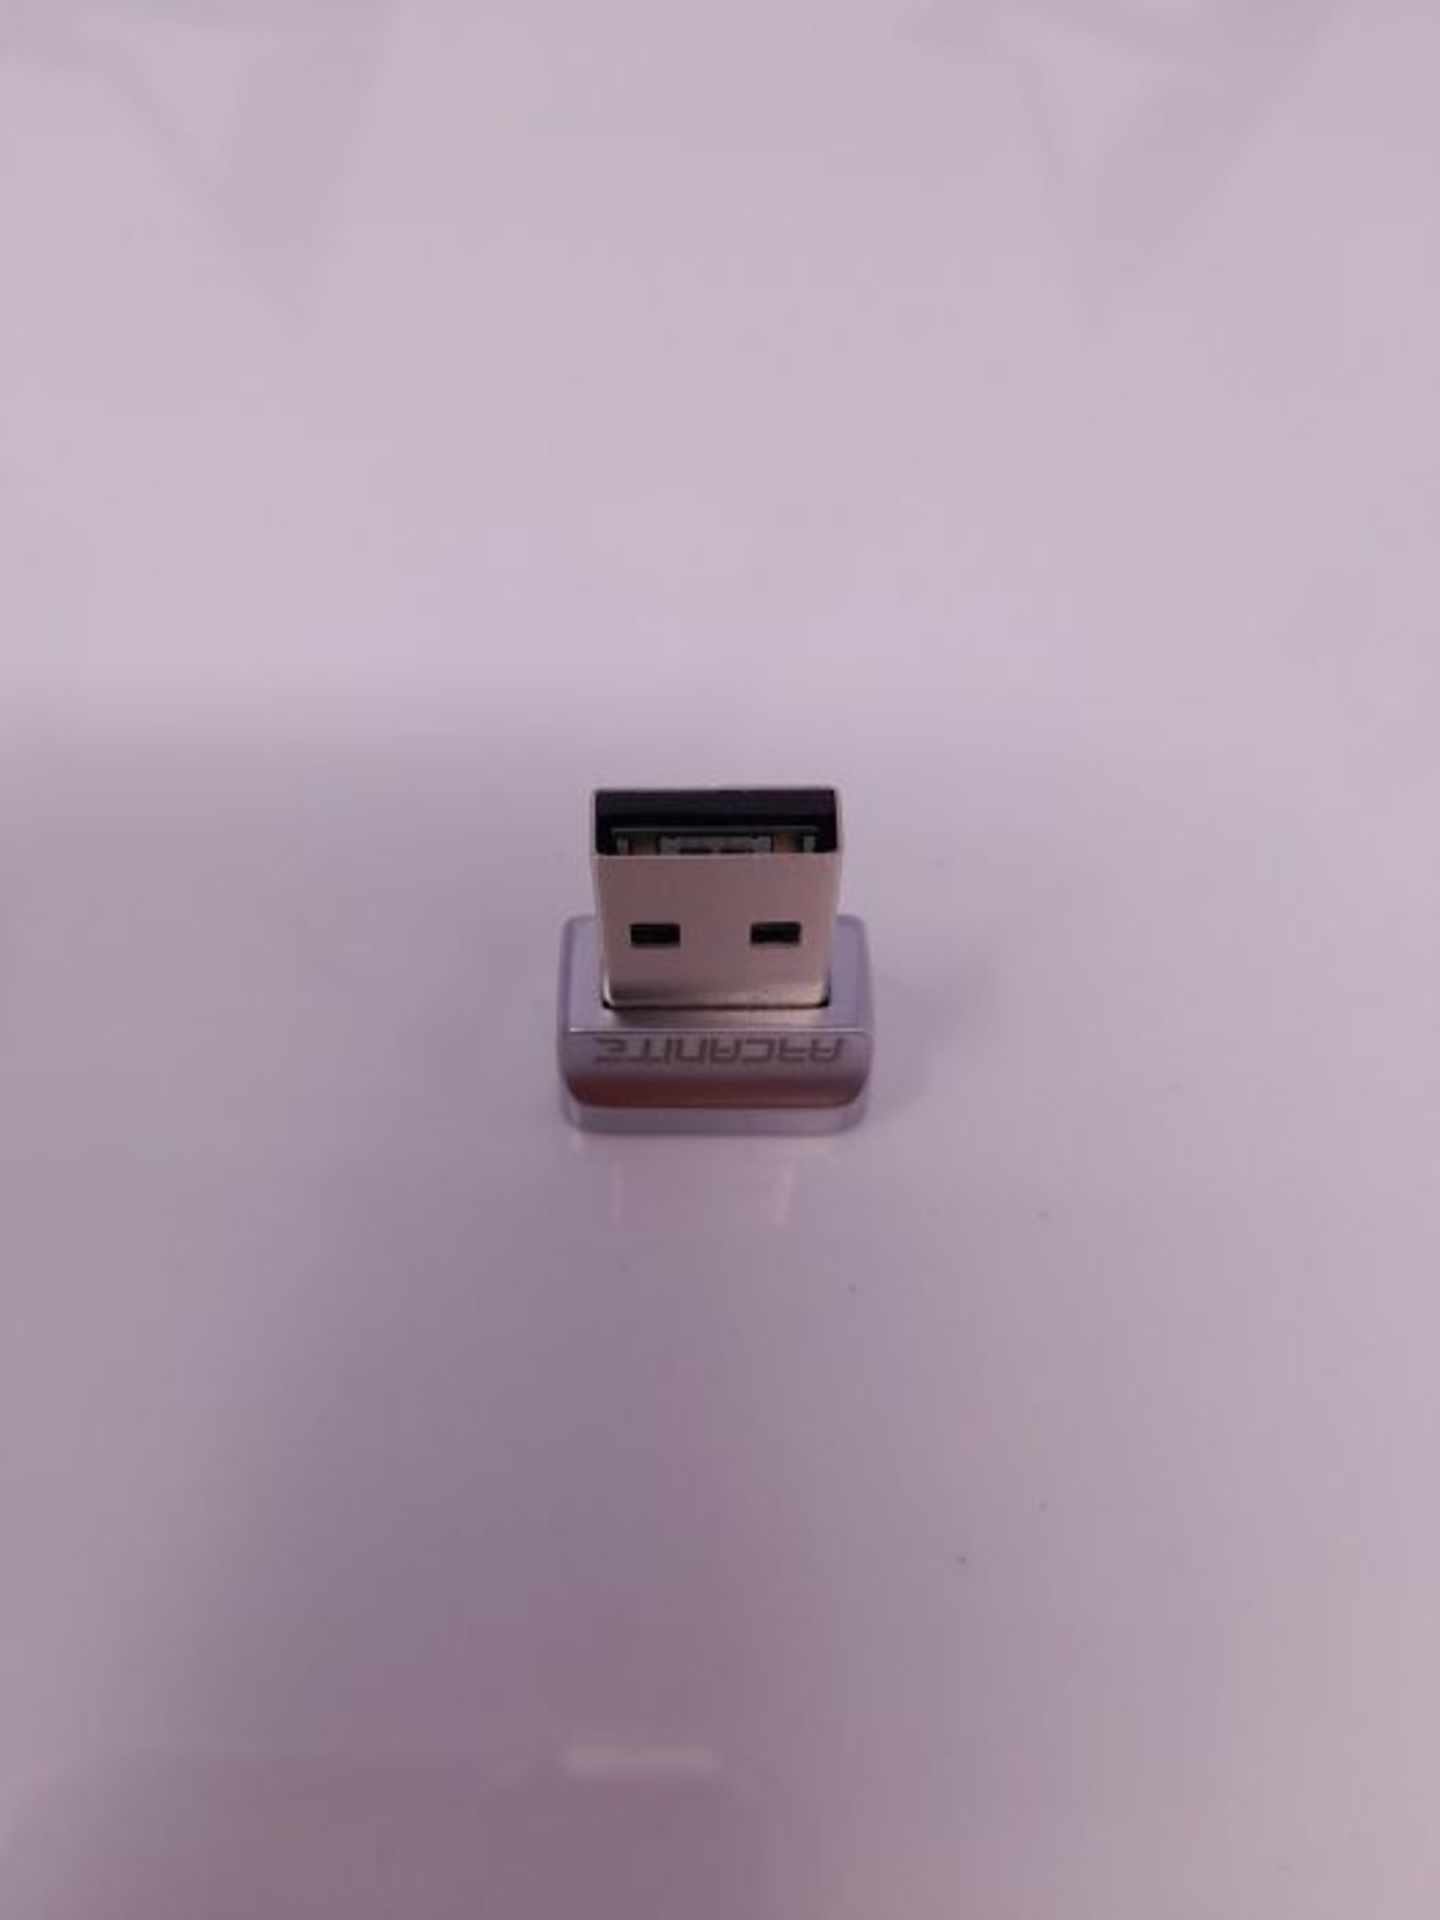 ARCANITE USB Fingerabdruckleser fÃ¼r Windows 10 Hello; 0,05 Sek., 360-Grad-Sensor-Si - Image 2 of 3